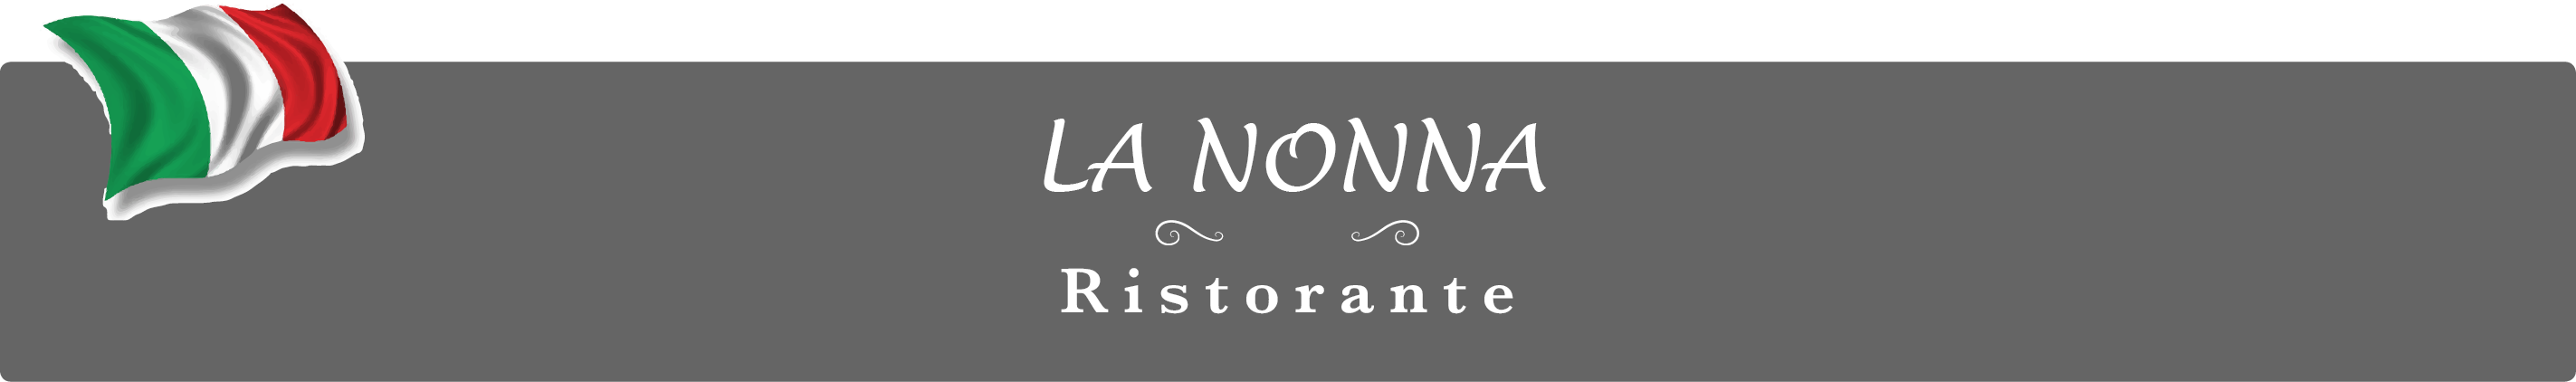 Pizzeria-Ristorante La Nonna Bautzen